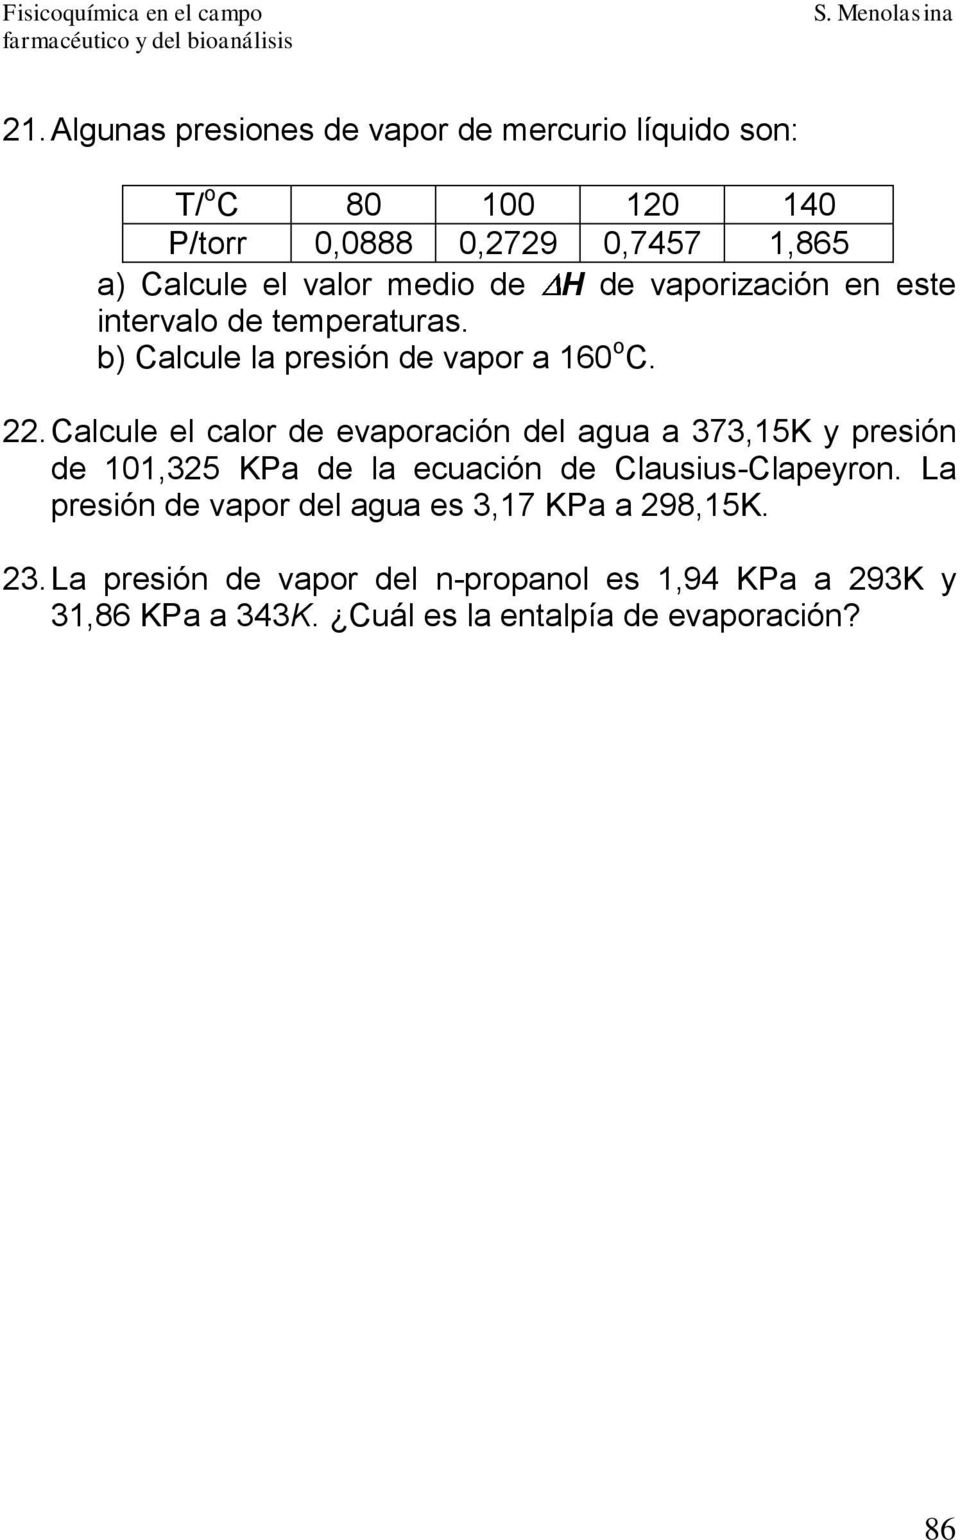 Calcule el calor de evaporación del agua a 373,5K y presión de 0,325 KPa de la ecuación de Clausius-Clapeyron.